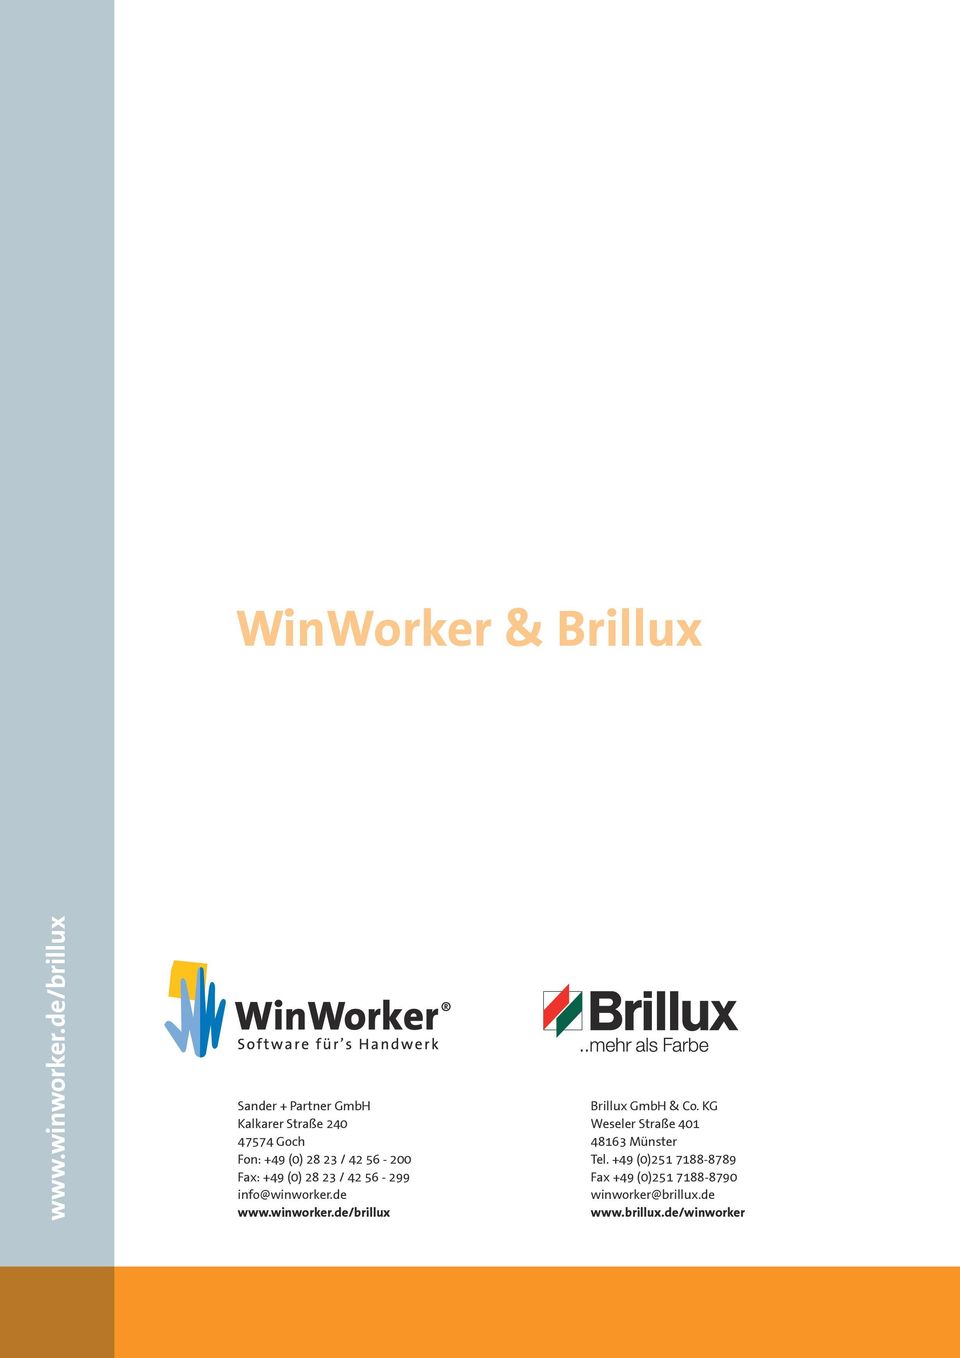 info@winworker.de Brillux GmbH & Co.